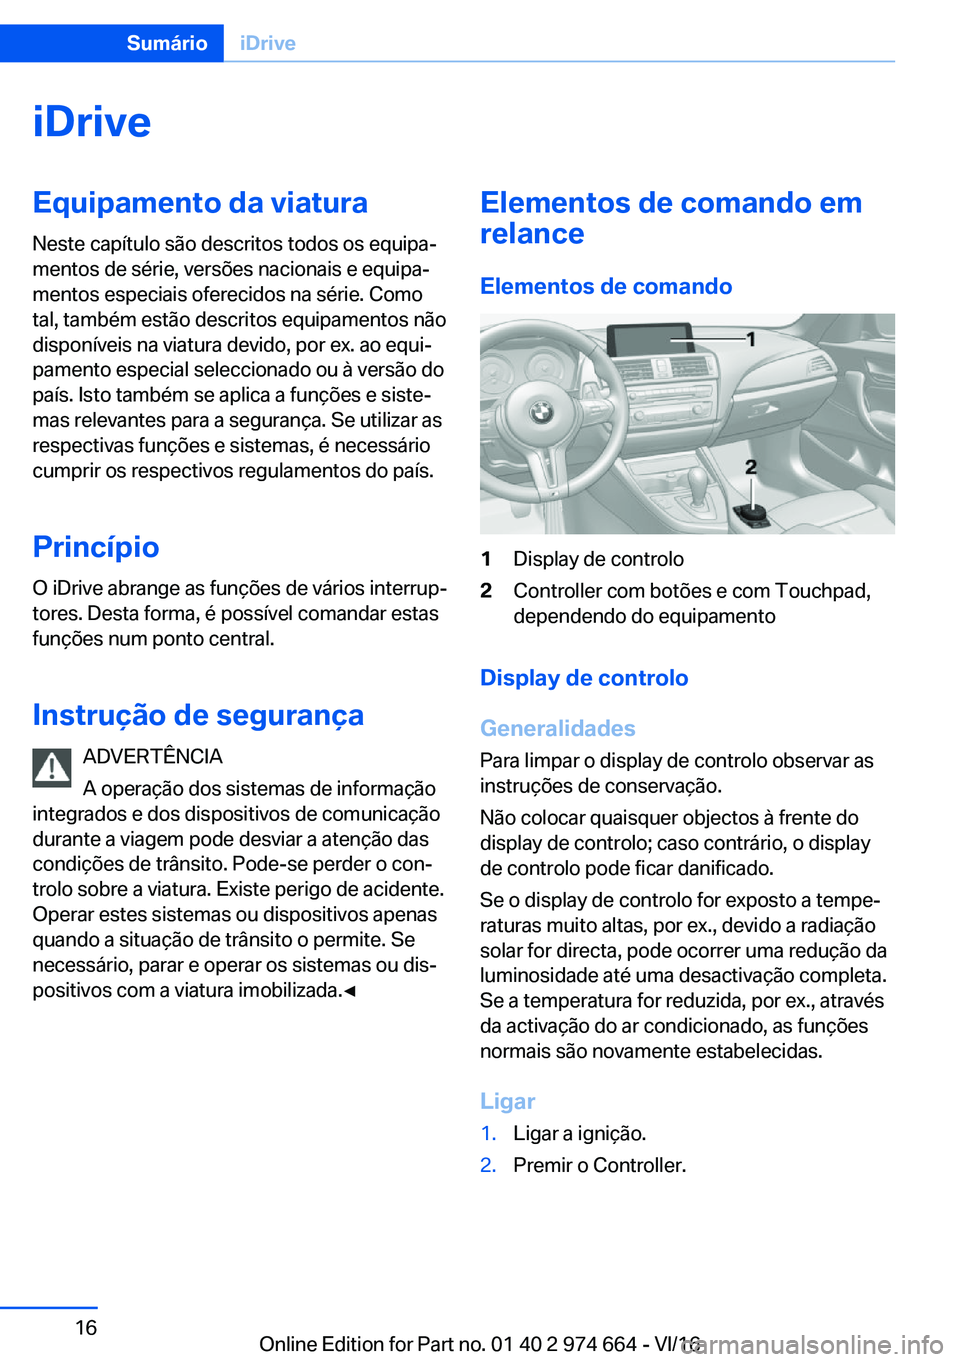 BMW M2 2017  Manual do condutor (in Portuguese) �i�D�r�i�v�e�E�q�u�i�p�a�m�e�n�t�o��d�a��v�i�a�t�u�r�a
�N�e�s�t�e� �c�a�p�